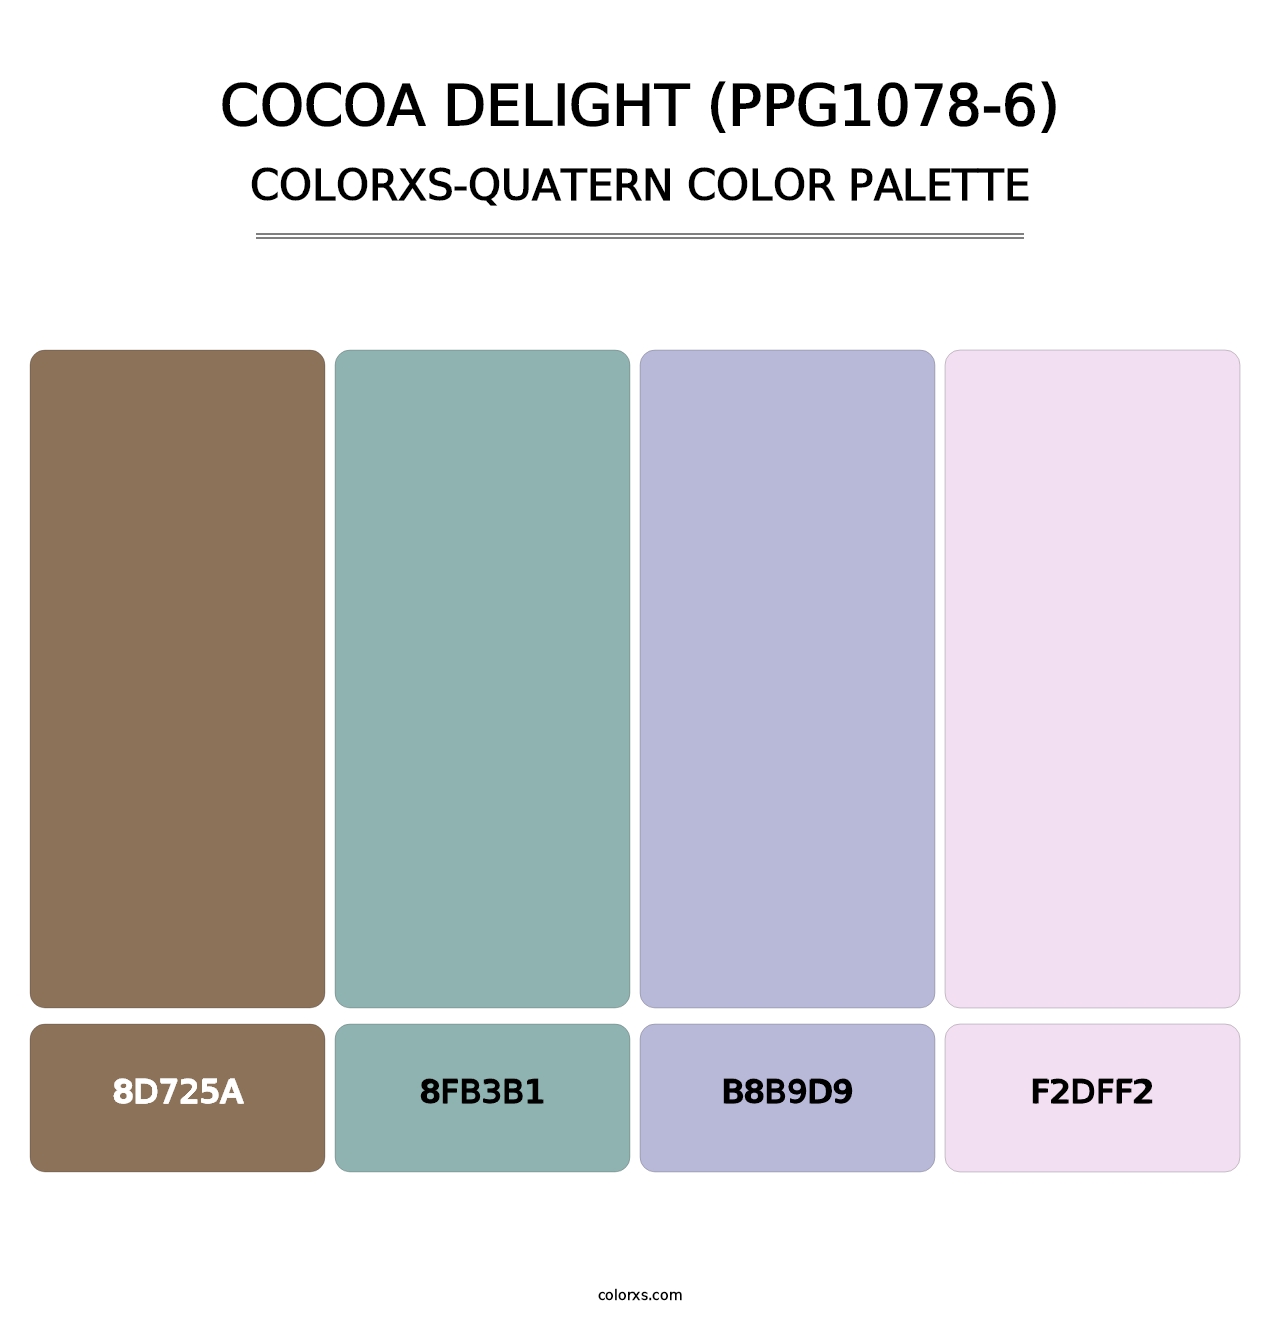 Cocoa Delight (PPG1078-6) - Colorxs Quatern Palette